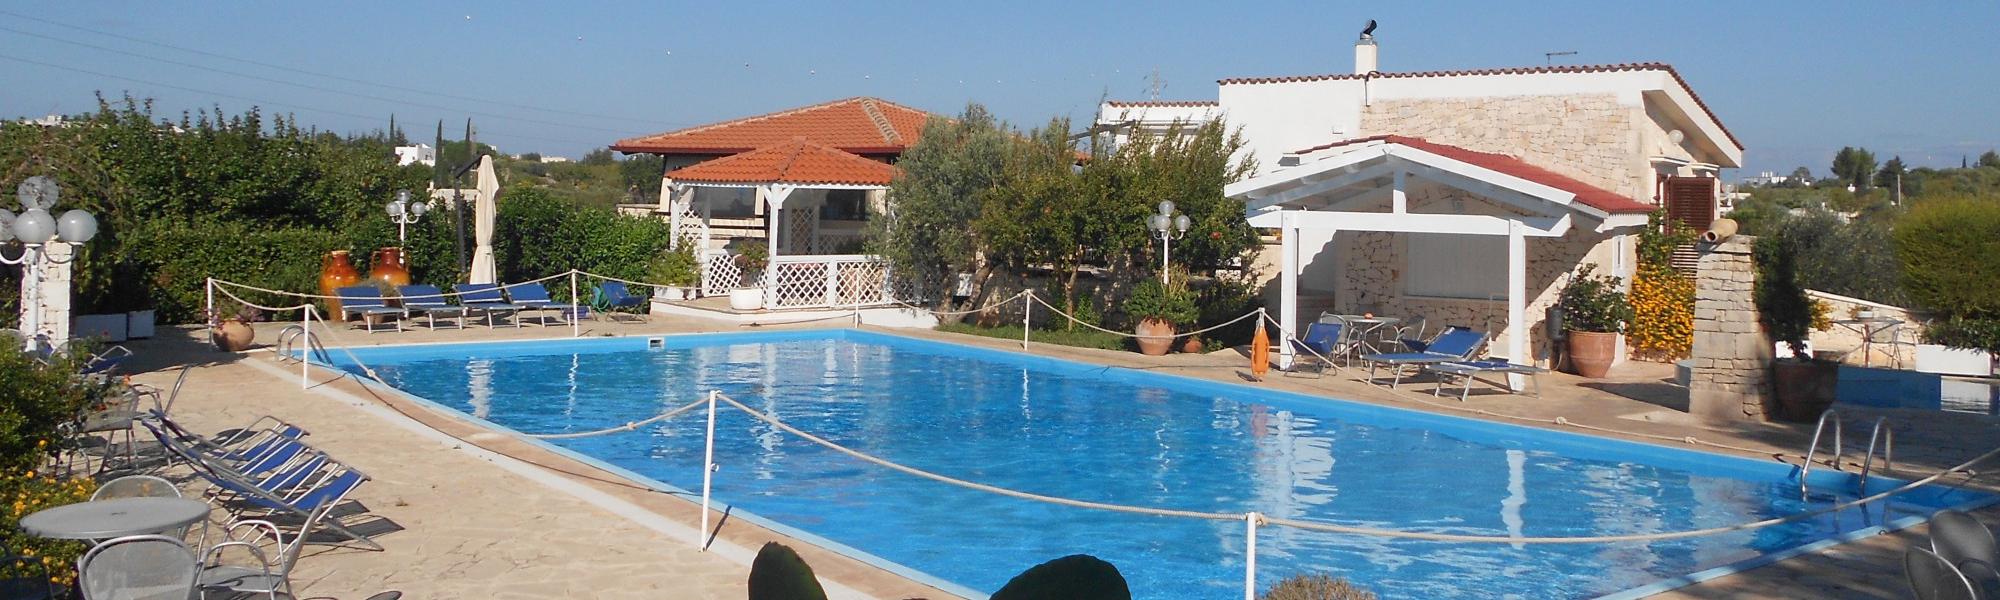 Agriturismo Salinola: Farmhouse swimming pool Ostuni, Apulia - Agriturismo Puglia 7